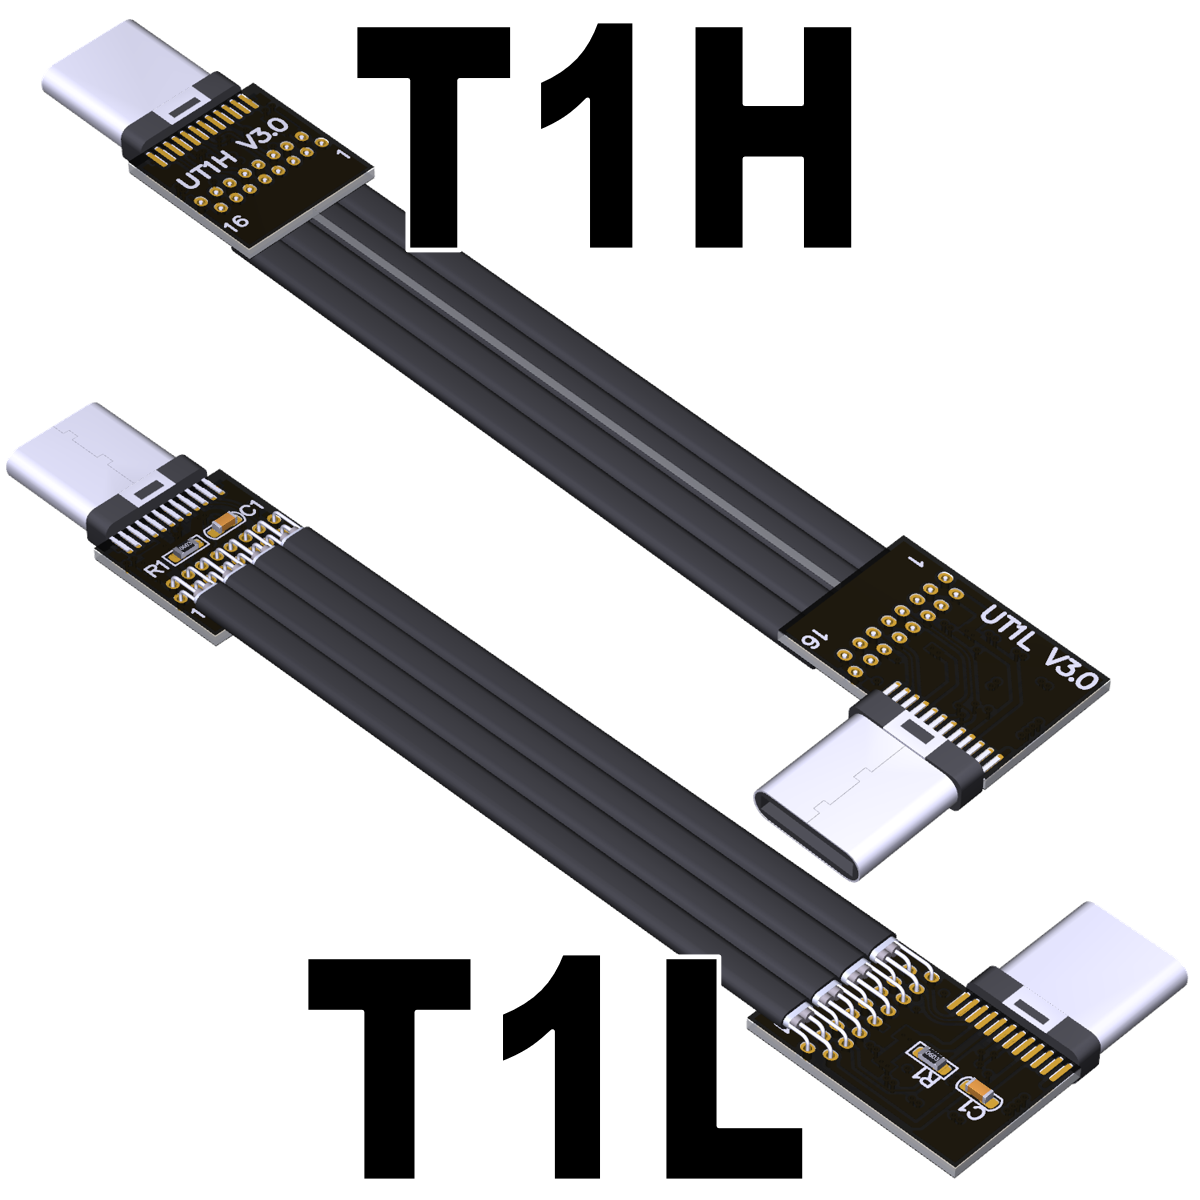 UTT3-MM-16P series